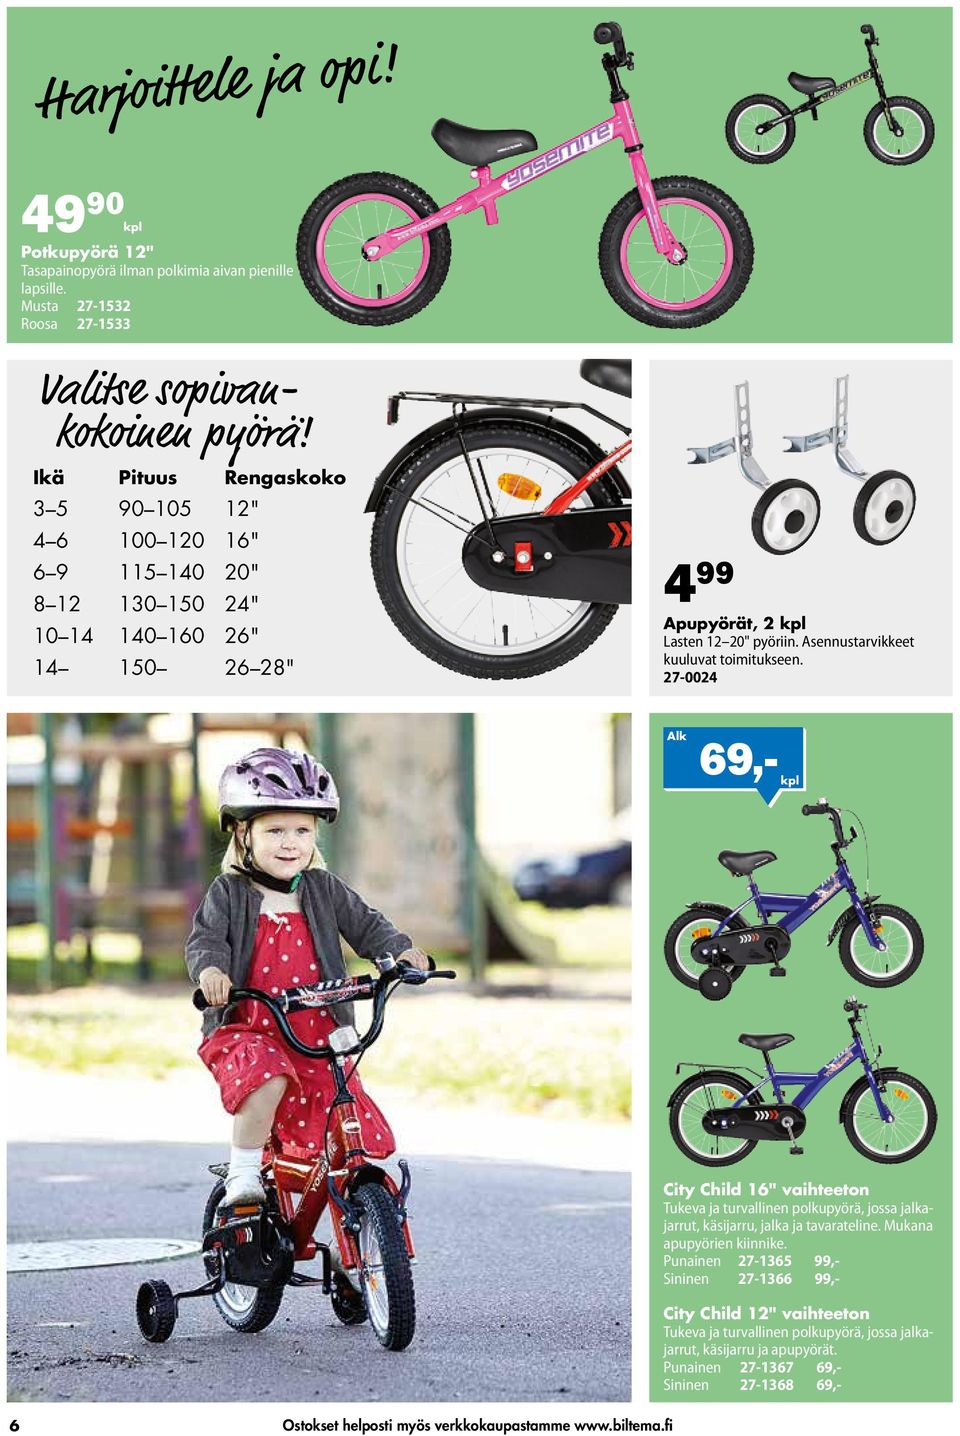 Asennustarvikkeet kuuluvat toimitukseen. 27-0024 Alk City Child 12" vaihteeton Tukeva ja turvallinen polkupyörä, jossa jalkajarrut, käsijarru ja apupyörät.